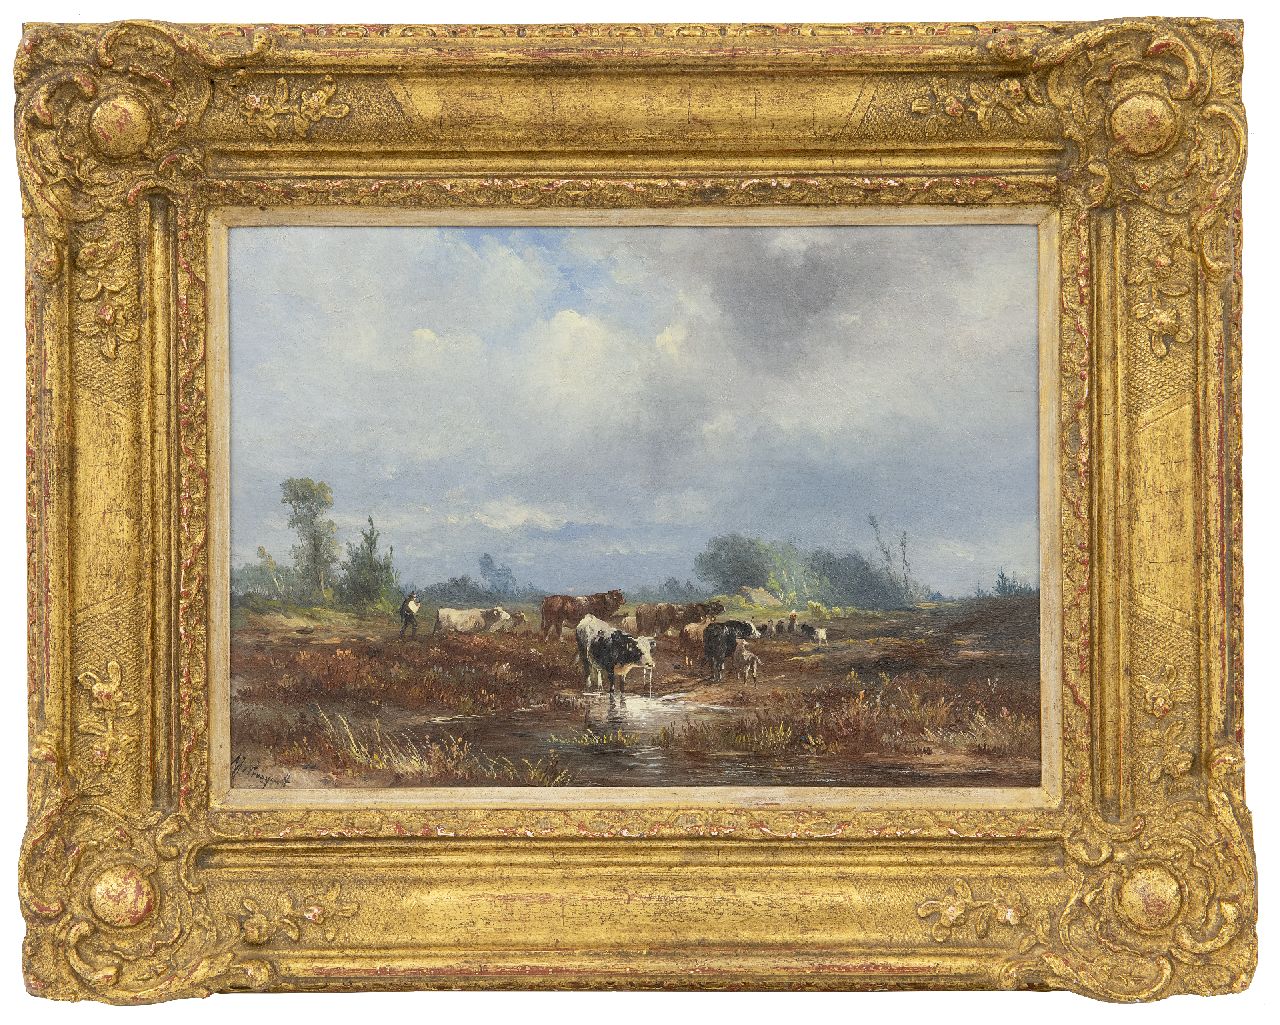 Prooijen A.J. van | Albert Jurardus van Prooijen | Schilderijen te koop aangeboden | Heidelandschap met herders en vee, olieverf op paneel 19,7 x 28,5 cm, gesigneerd linksonder